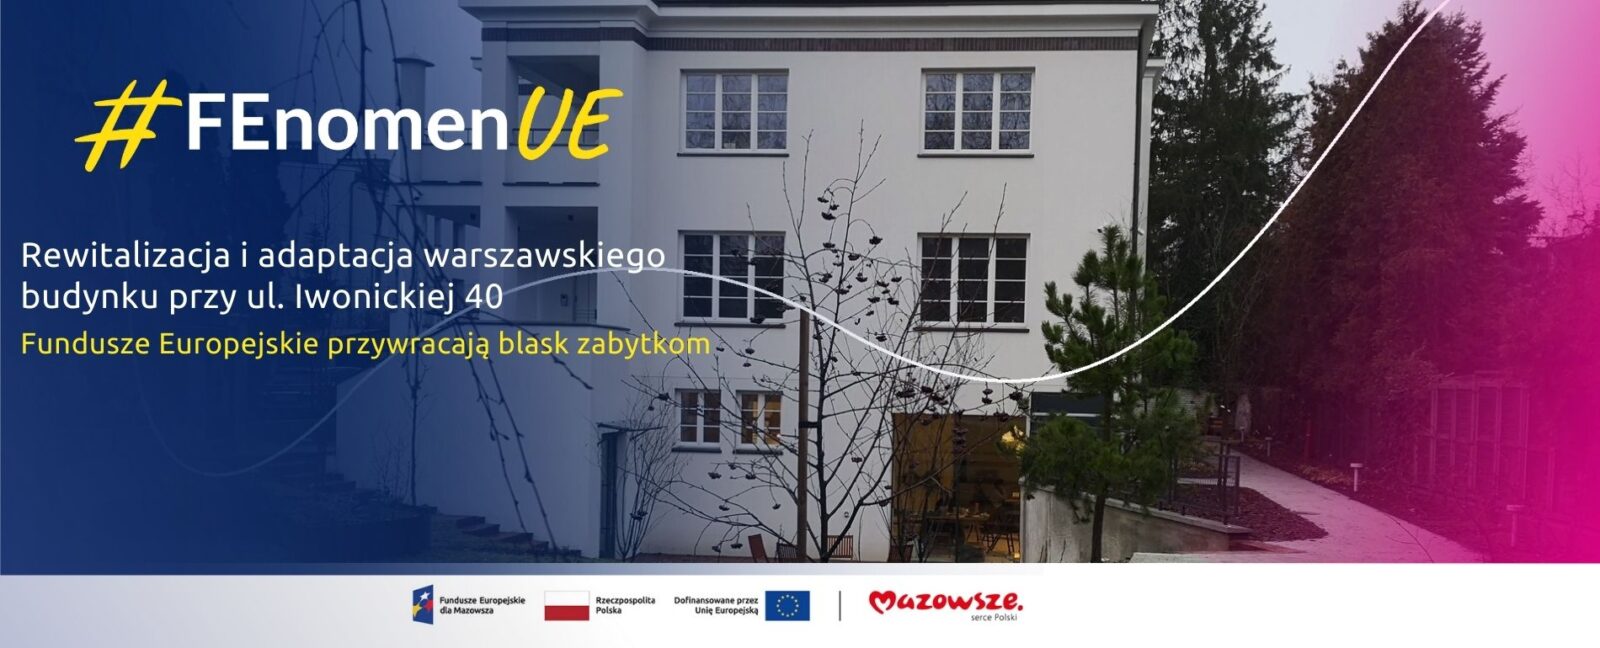 grafika przedstawia napis: #FEnomenUE Rewitalizacja i adaptacja warszawskiego budynku przy ul. Iwonickiej 40. Fundusze Europejskie przywracają blask zabytkom